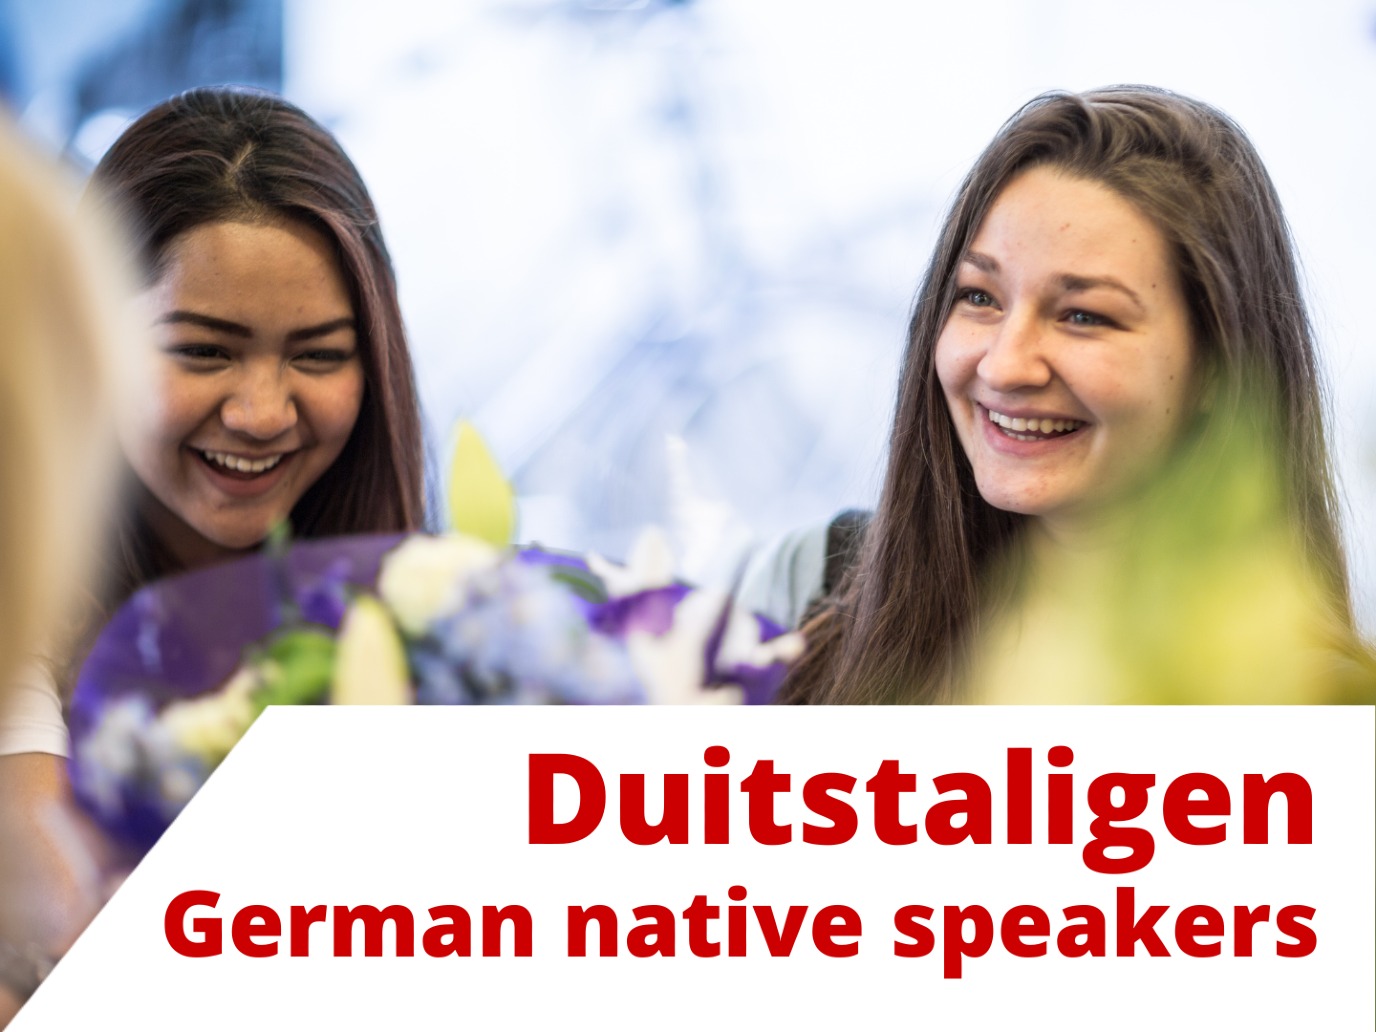 German native speakers